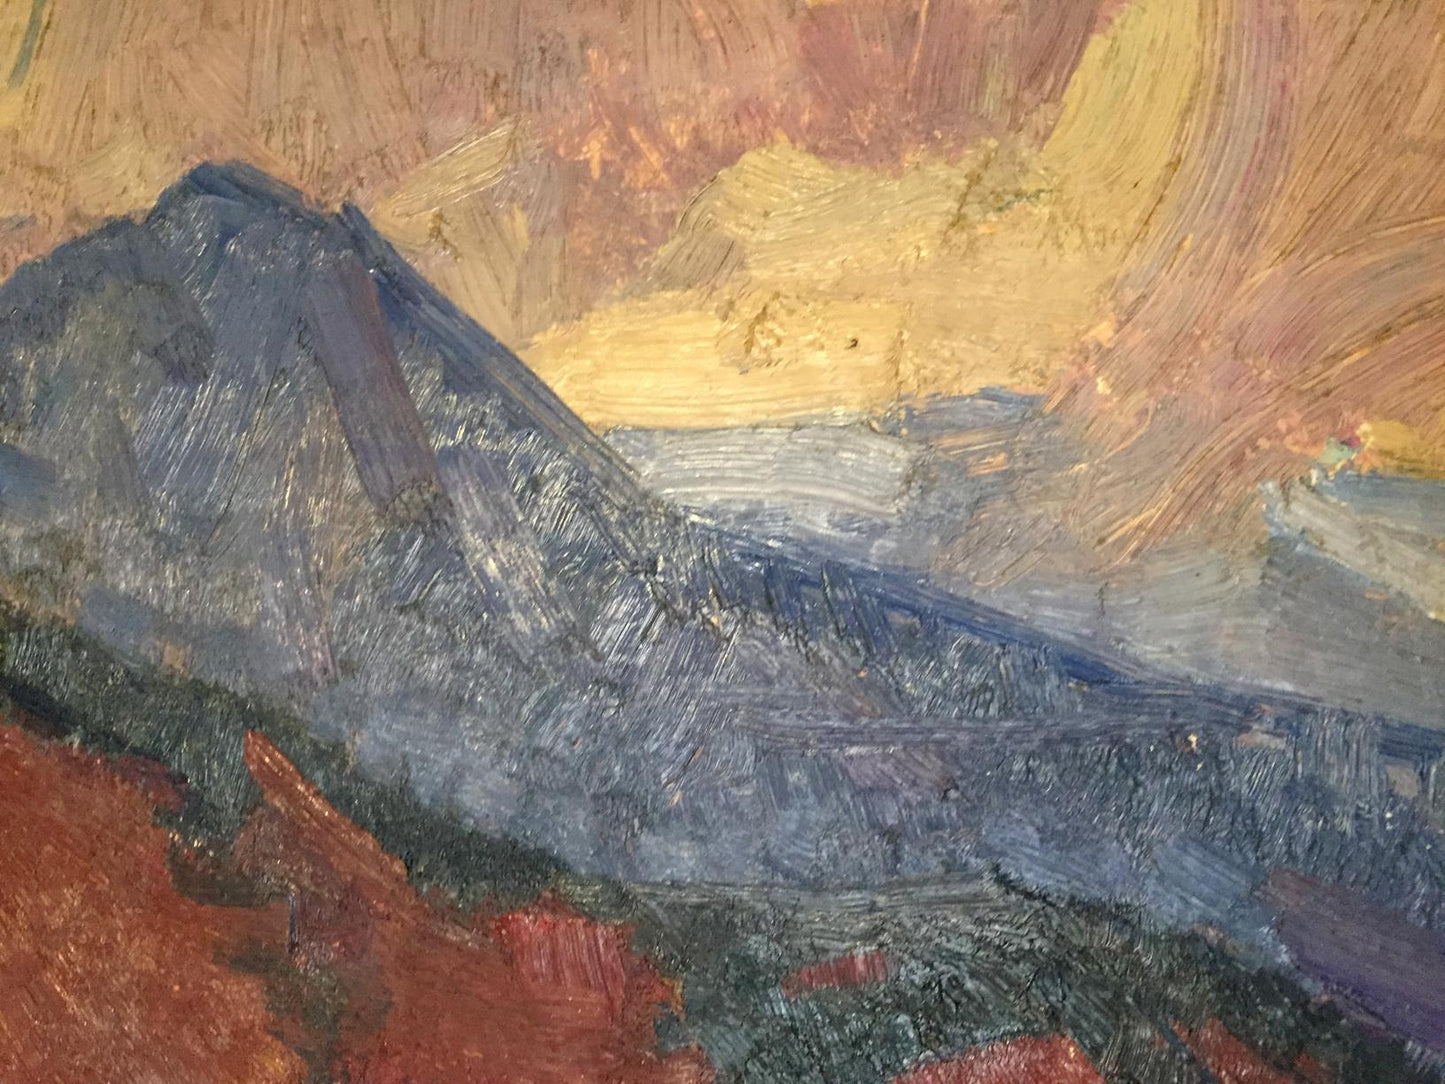 Nikolay Aleksandrovich Khrustalenko's interpretation of "The Mountains" in oil